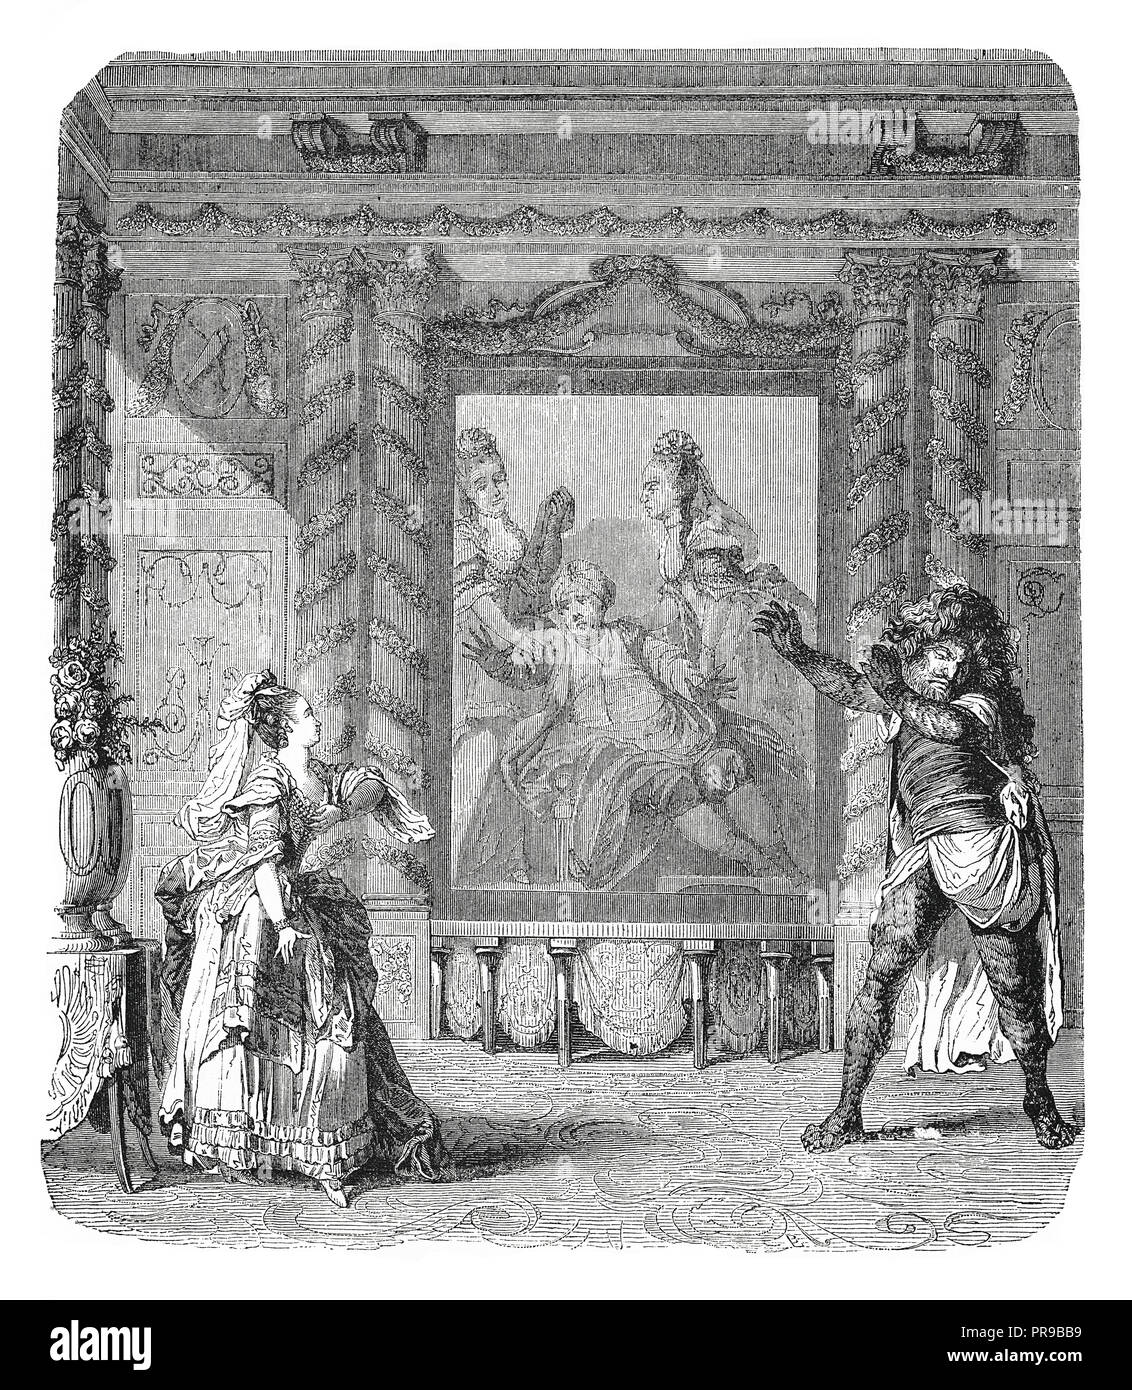 19 Abbildung: eine Szene aus "Zemira und Azor' Oper - Ballett von Marmontel und Gretry (1771). Nach einem Drucken seit dem 18. Jahrhundert. Original ar Stockfoto